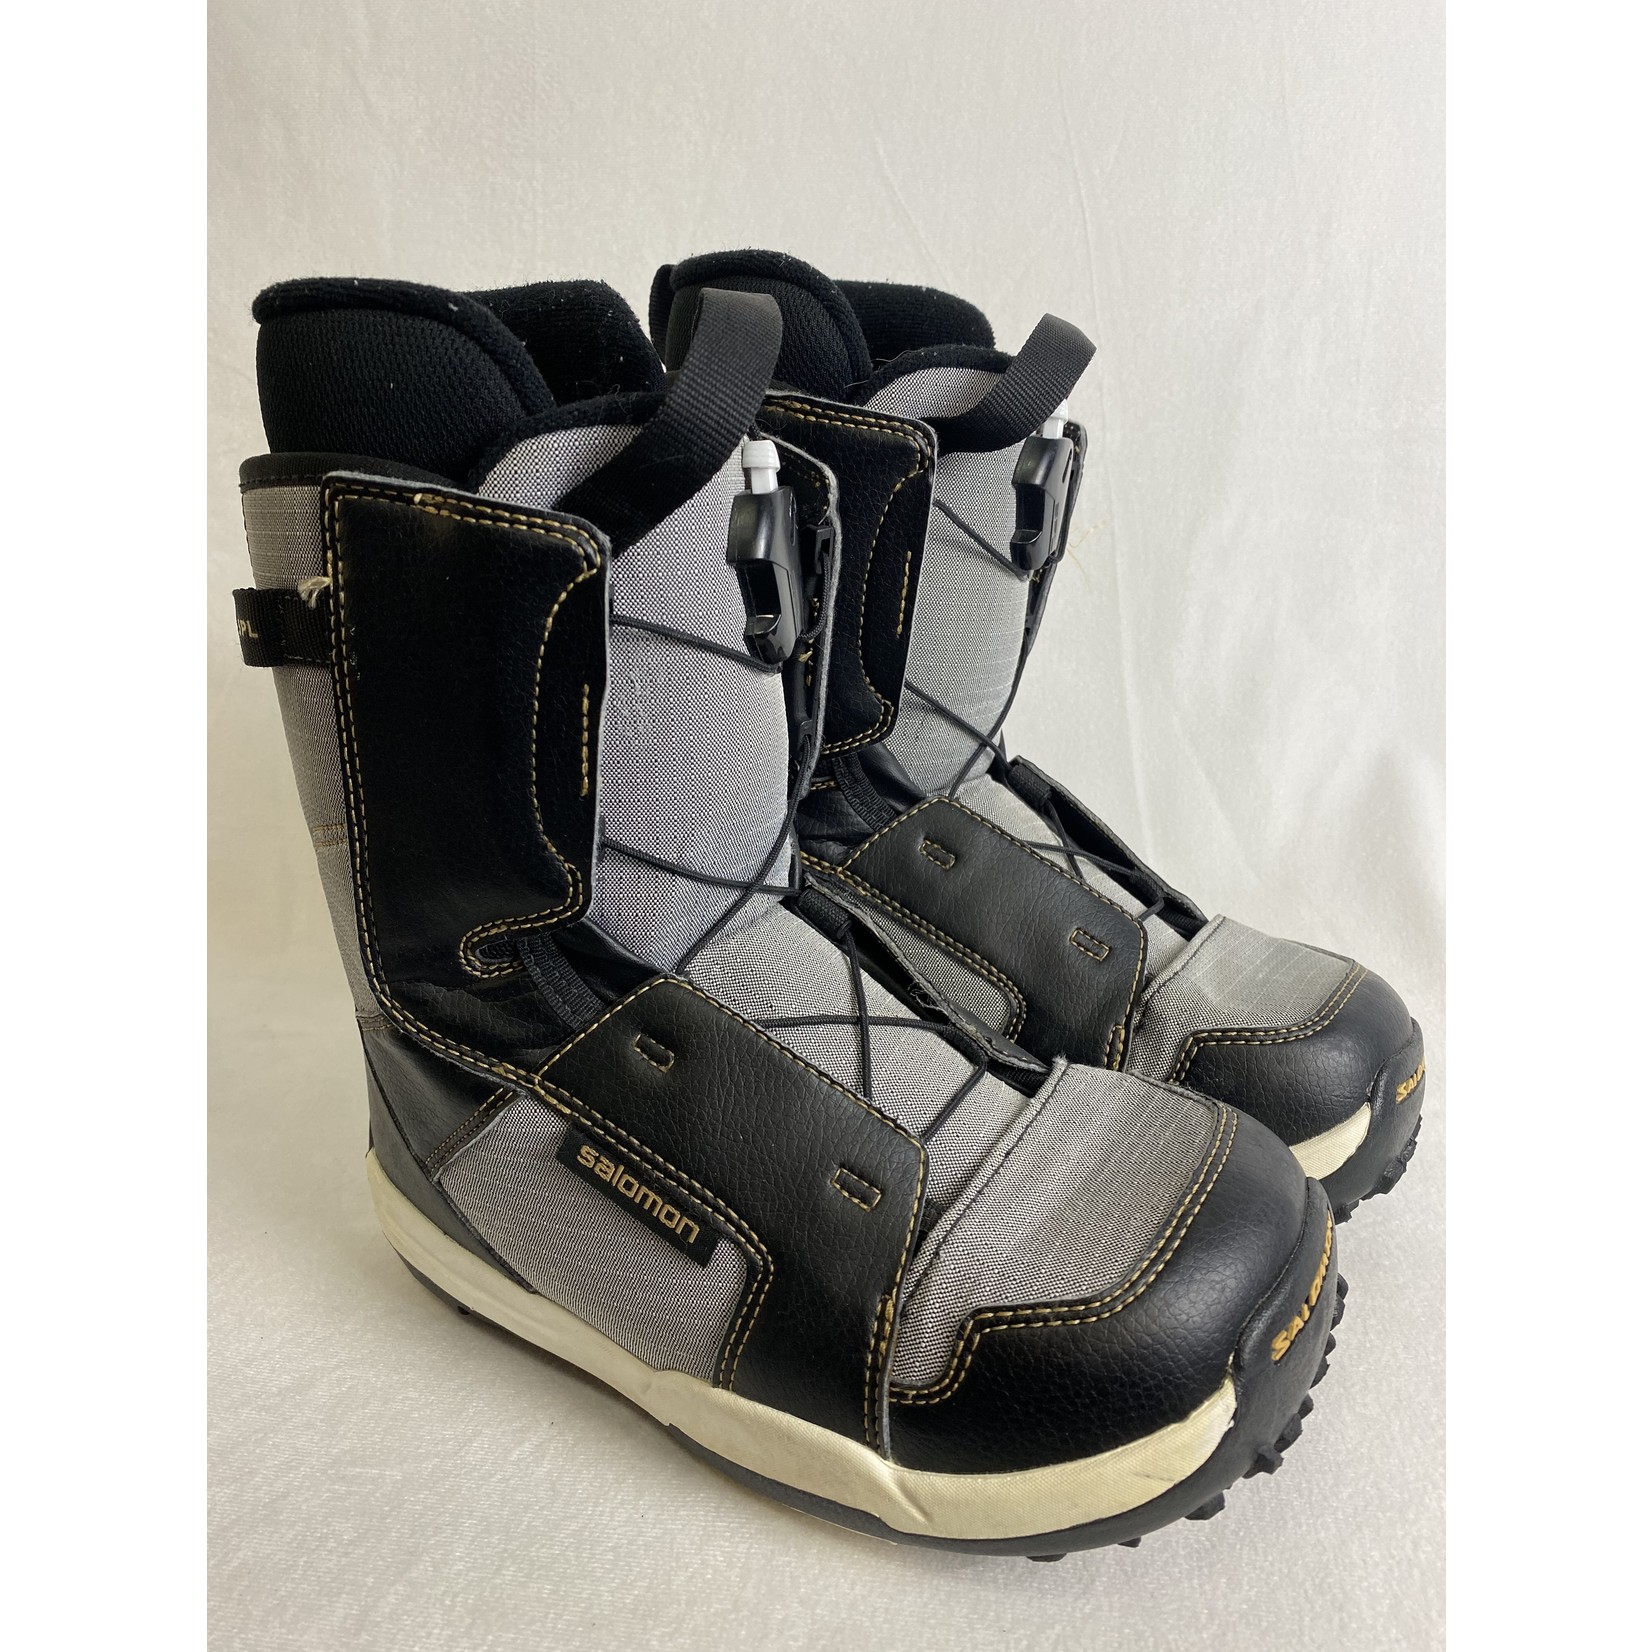 Salomon Salomon Talapus Snowboard Boots (Size 3 KIDS)